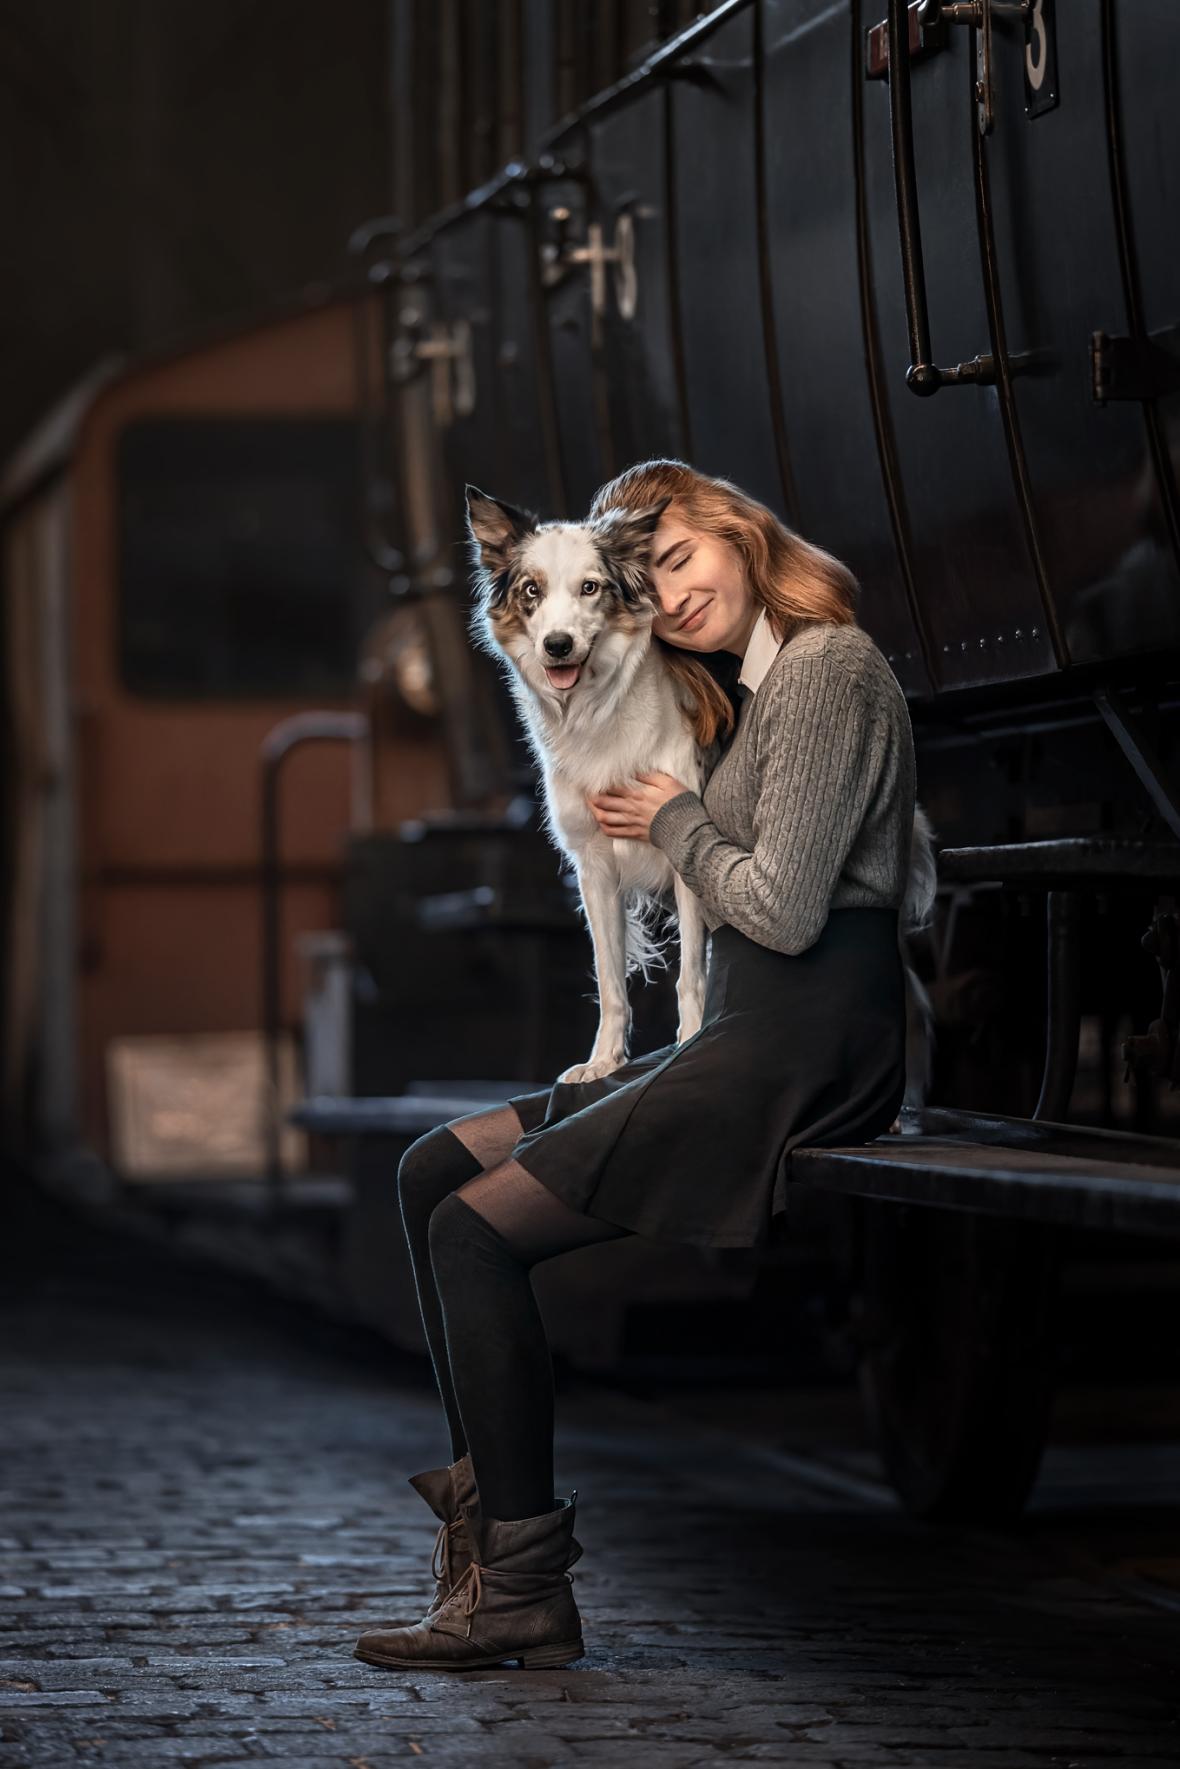 Η «Ανιδιοτελής Αγάπη» σε σιδηροδρομικό σταθμό κέρδισε την πρώτη θέση στην κατηγορία «Σκύλοι & Ανθρωποι»